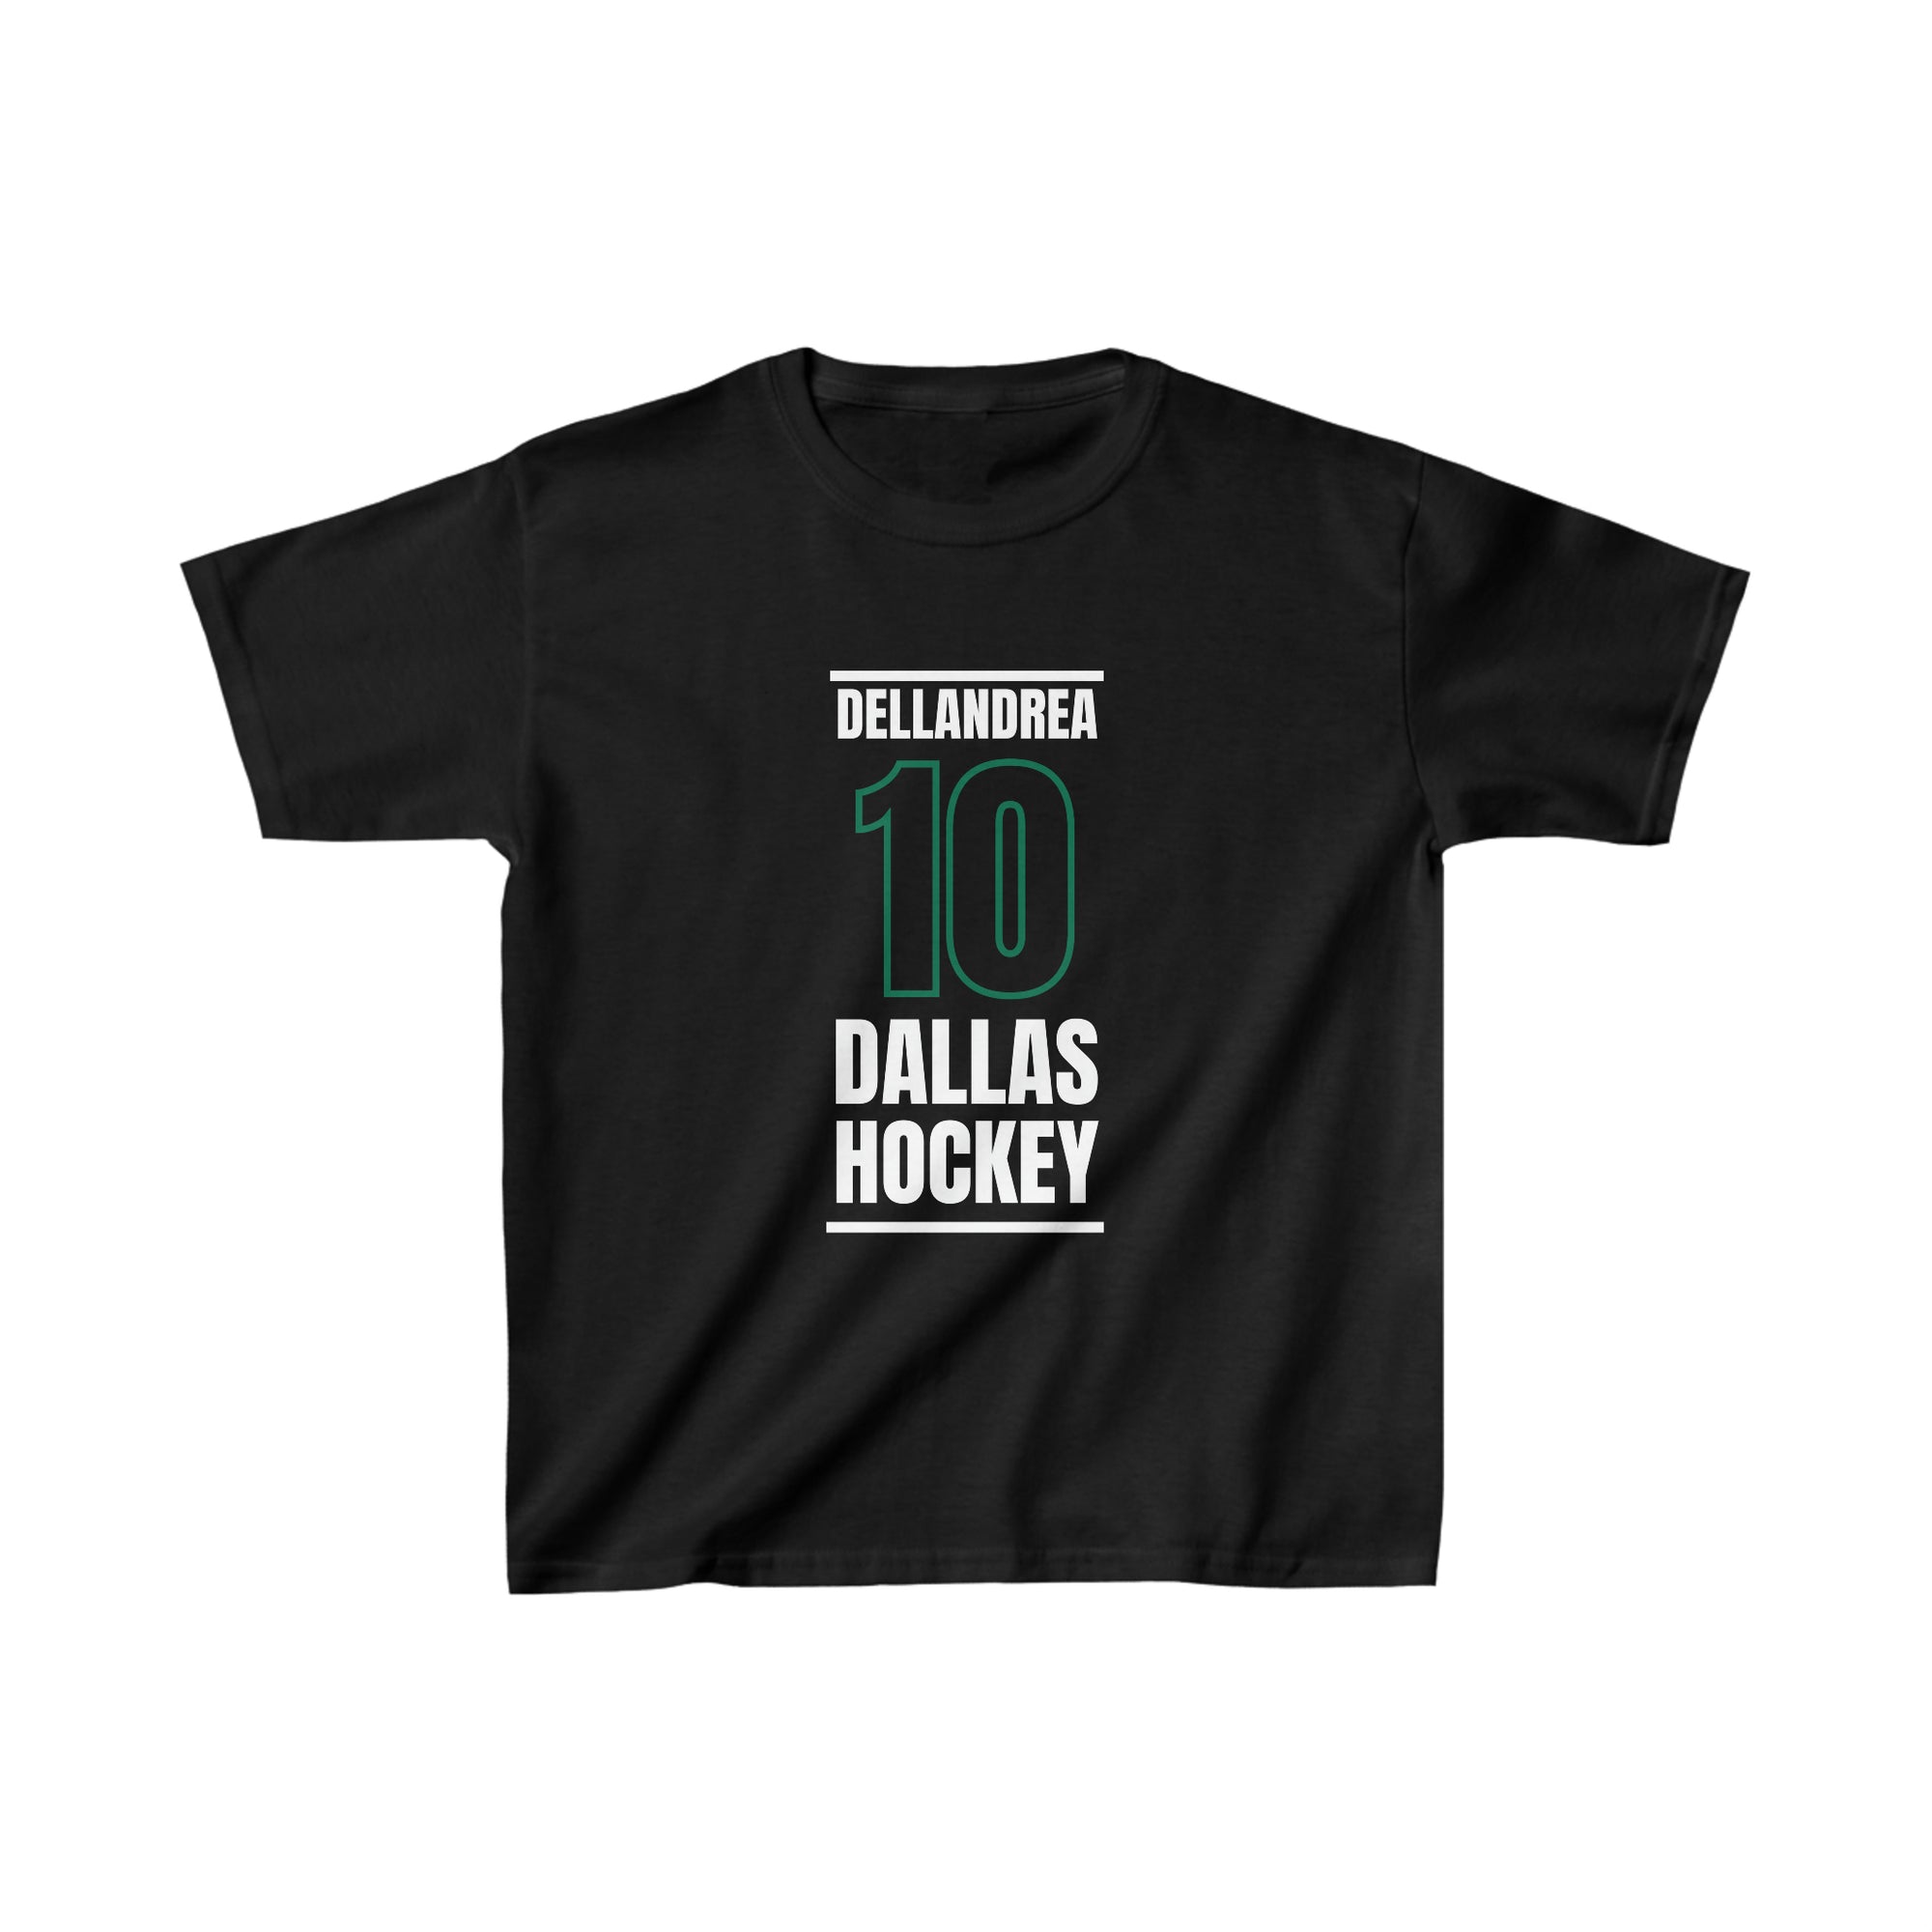 Dellandrea 10 Dallas Hockey Black Vertical Design Kids Tee